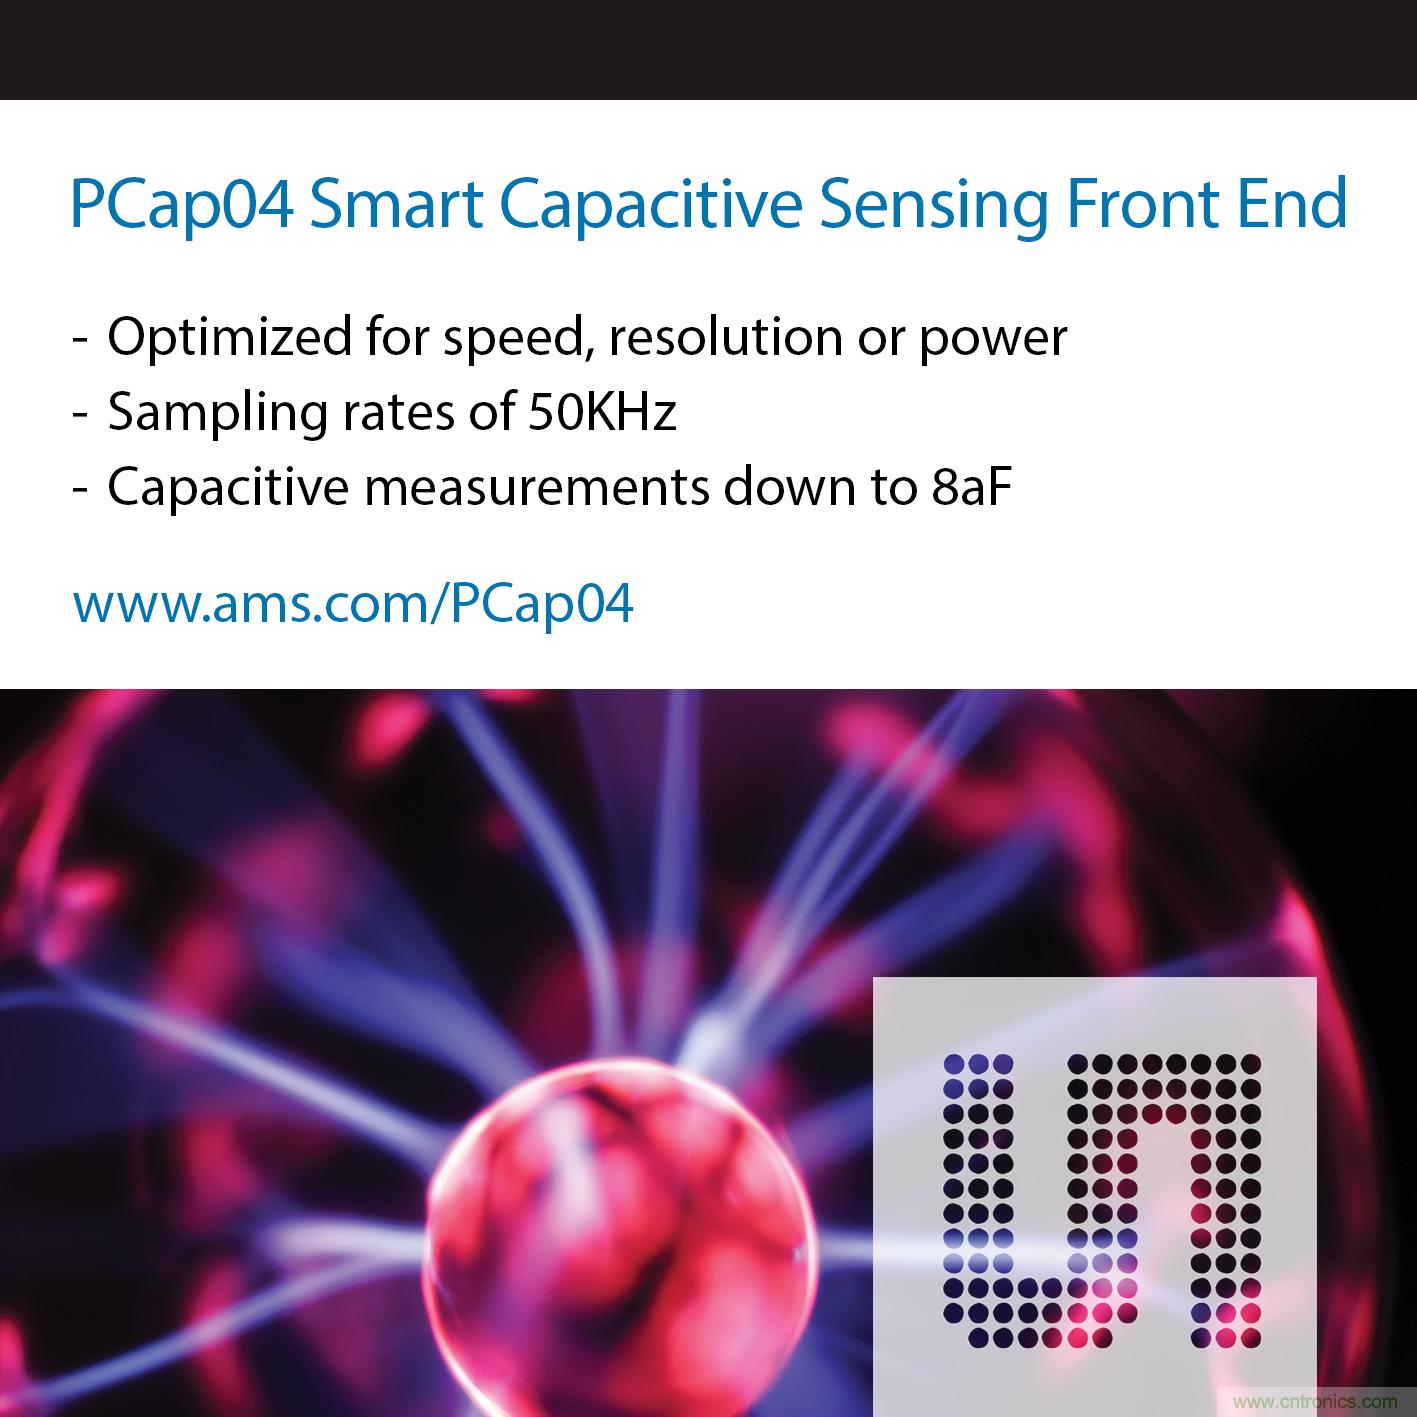 艾迈斯半导体新的PCap04智能电容式传感前端实现速度、分辨率及功率优化